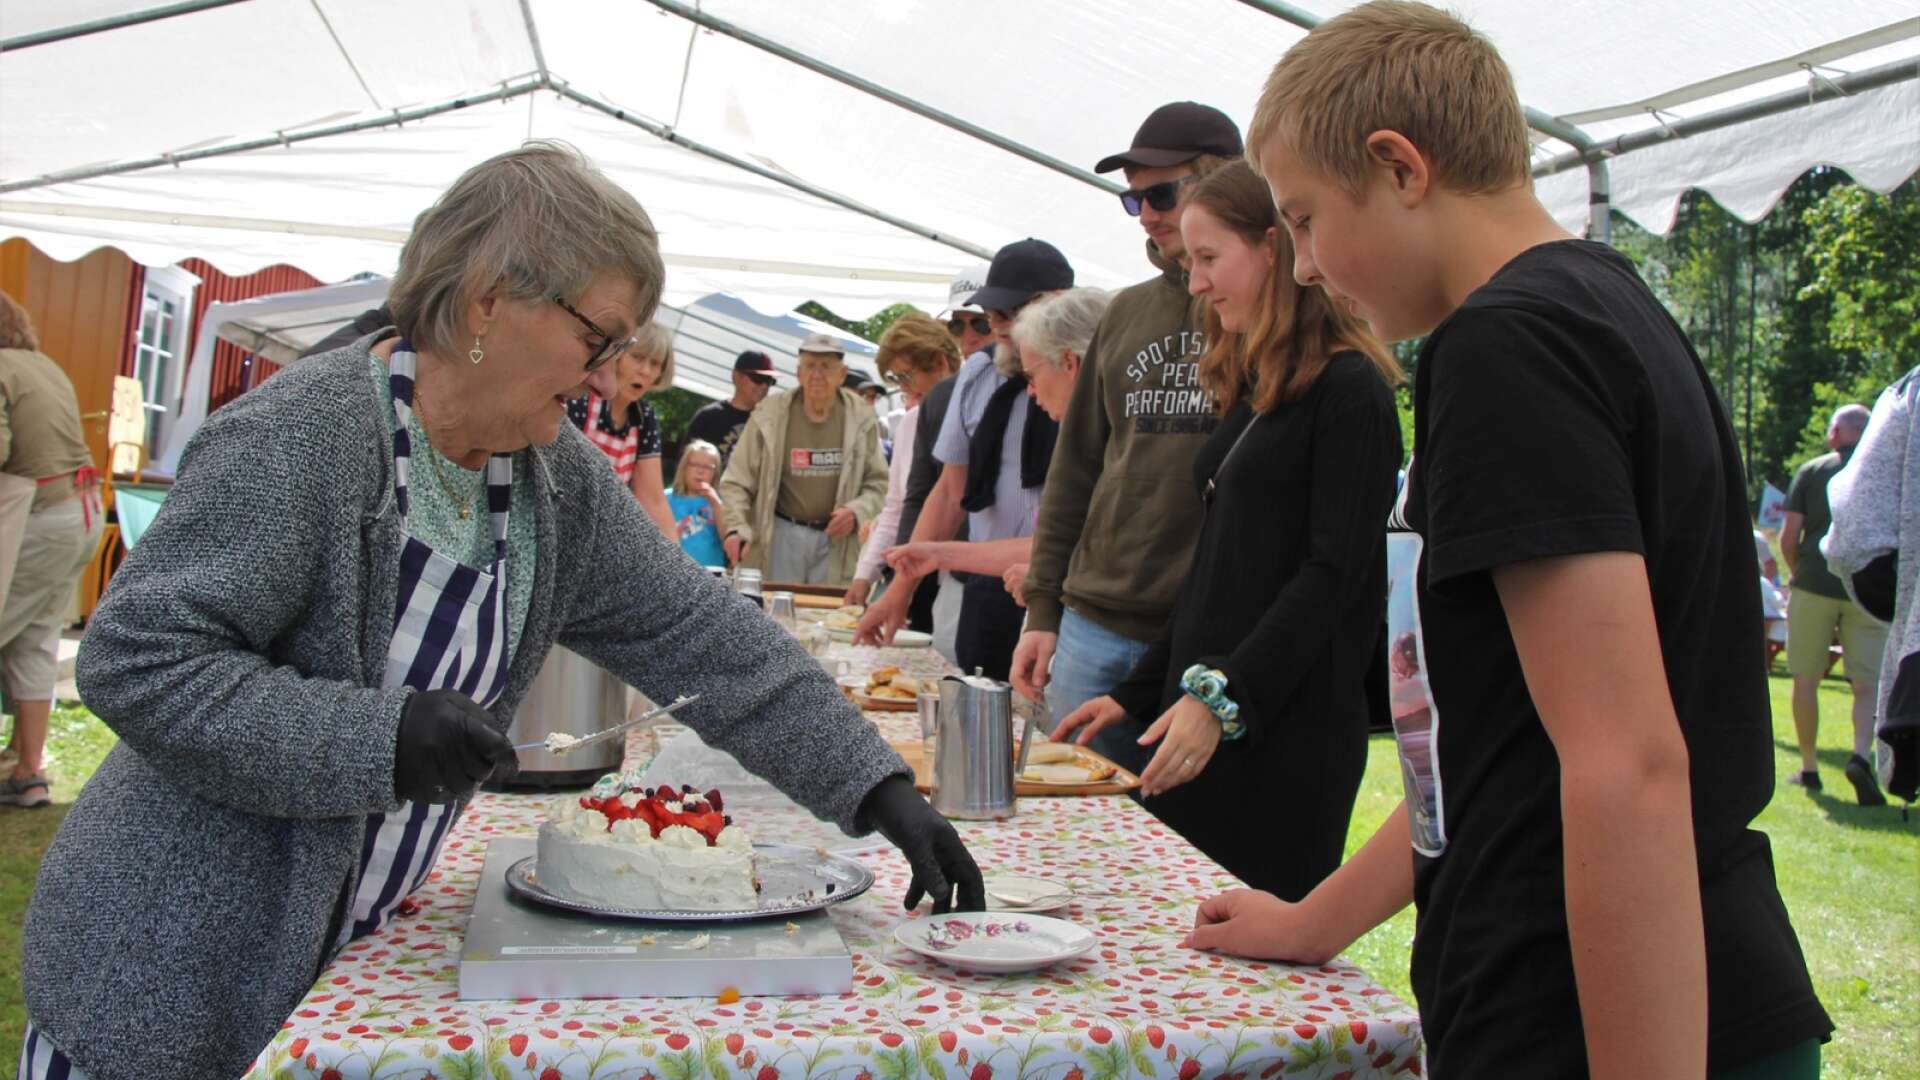 Fruntimmersveckan på Kopparbolet har blivit en tradition och lockar många besökare. Tårtor är ett givet inslag. Under onsdagen fick Lisbeth Lans skära tårtbitar åt de fikasugna besökarna.